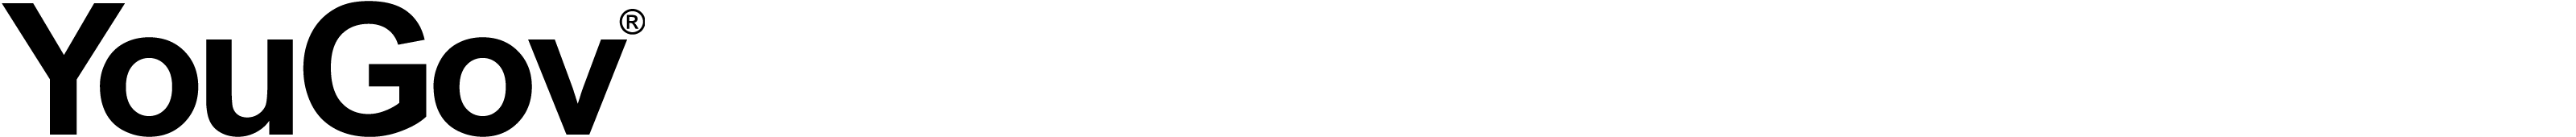 YouGov logo